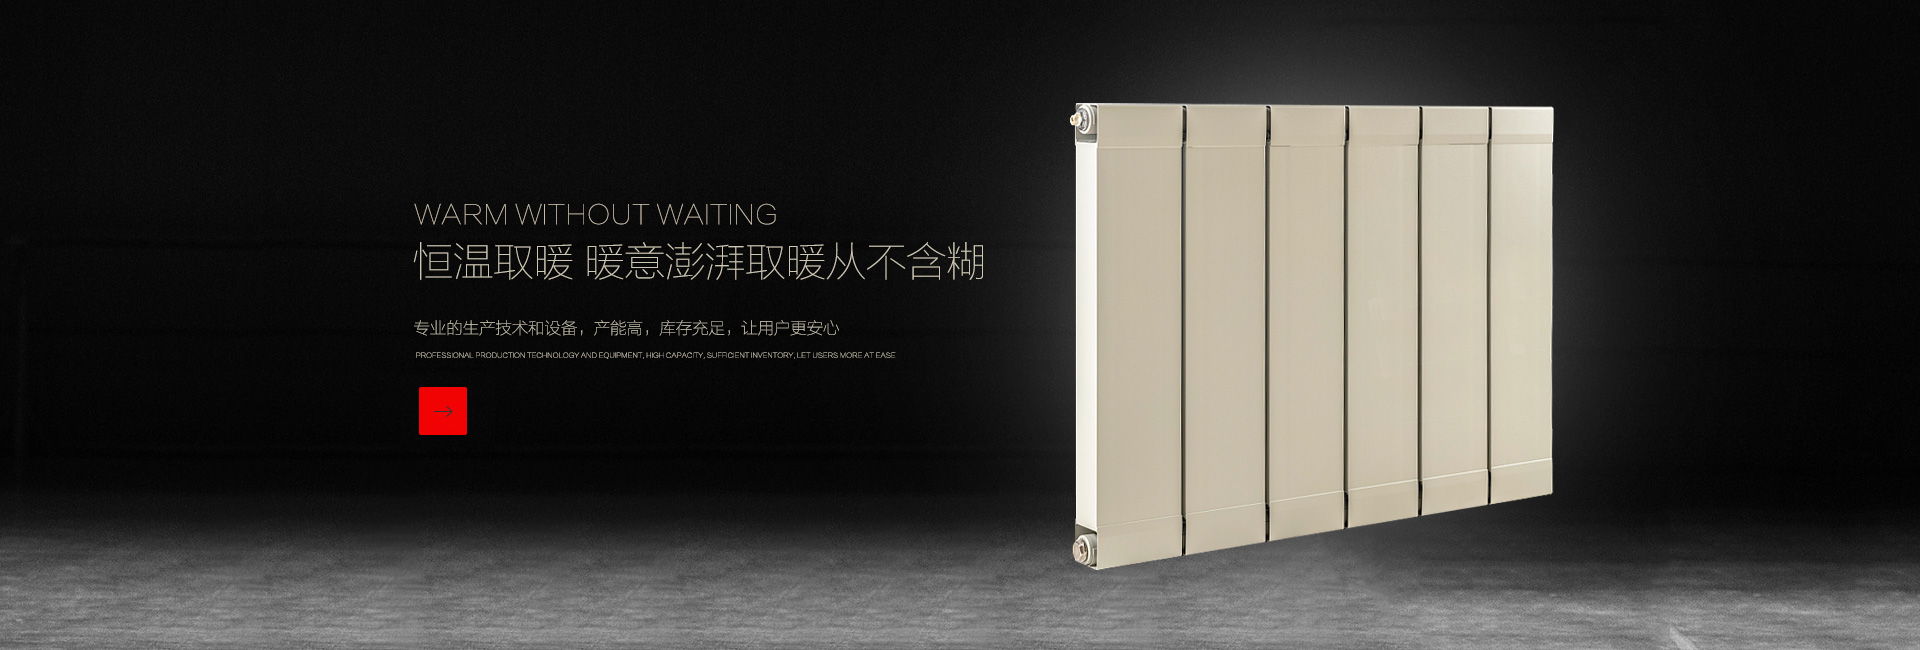 凯达朗诺(北京)散热器有限公司 